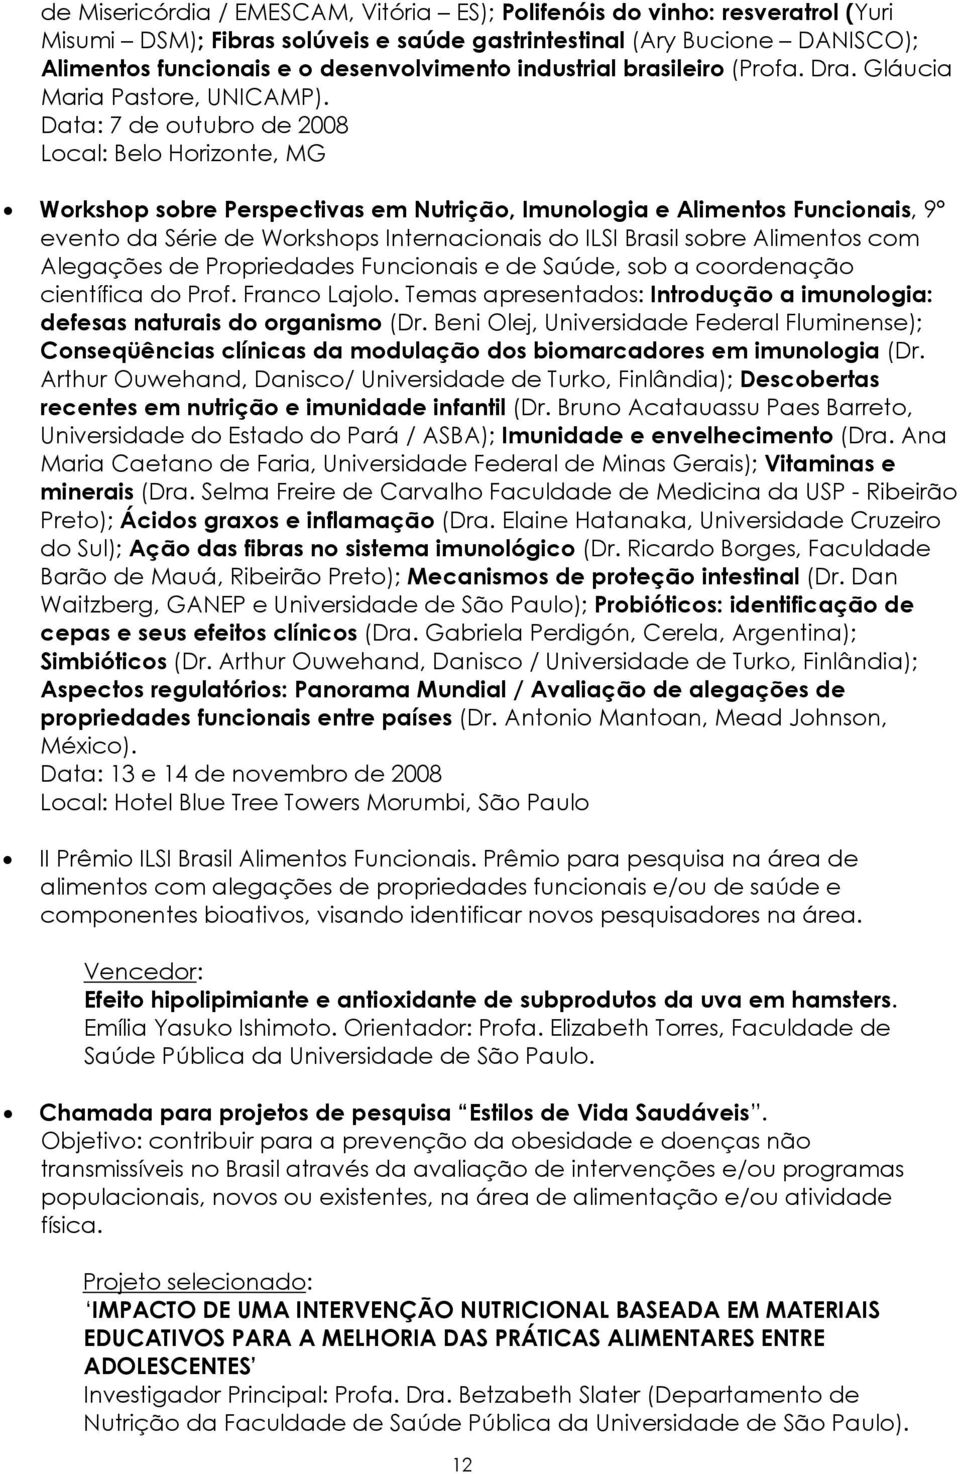 Data: 7 de outubro de 2008 Local: Belo Horizonte, MG Workshop sobre Perspectivas em Nutrição, Imunologia e Alimentos Funcionais, 9 evento da Série de Workshops Internacionais do ILSI Brasil sobre